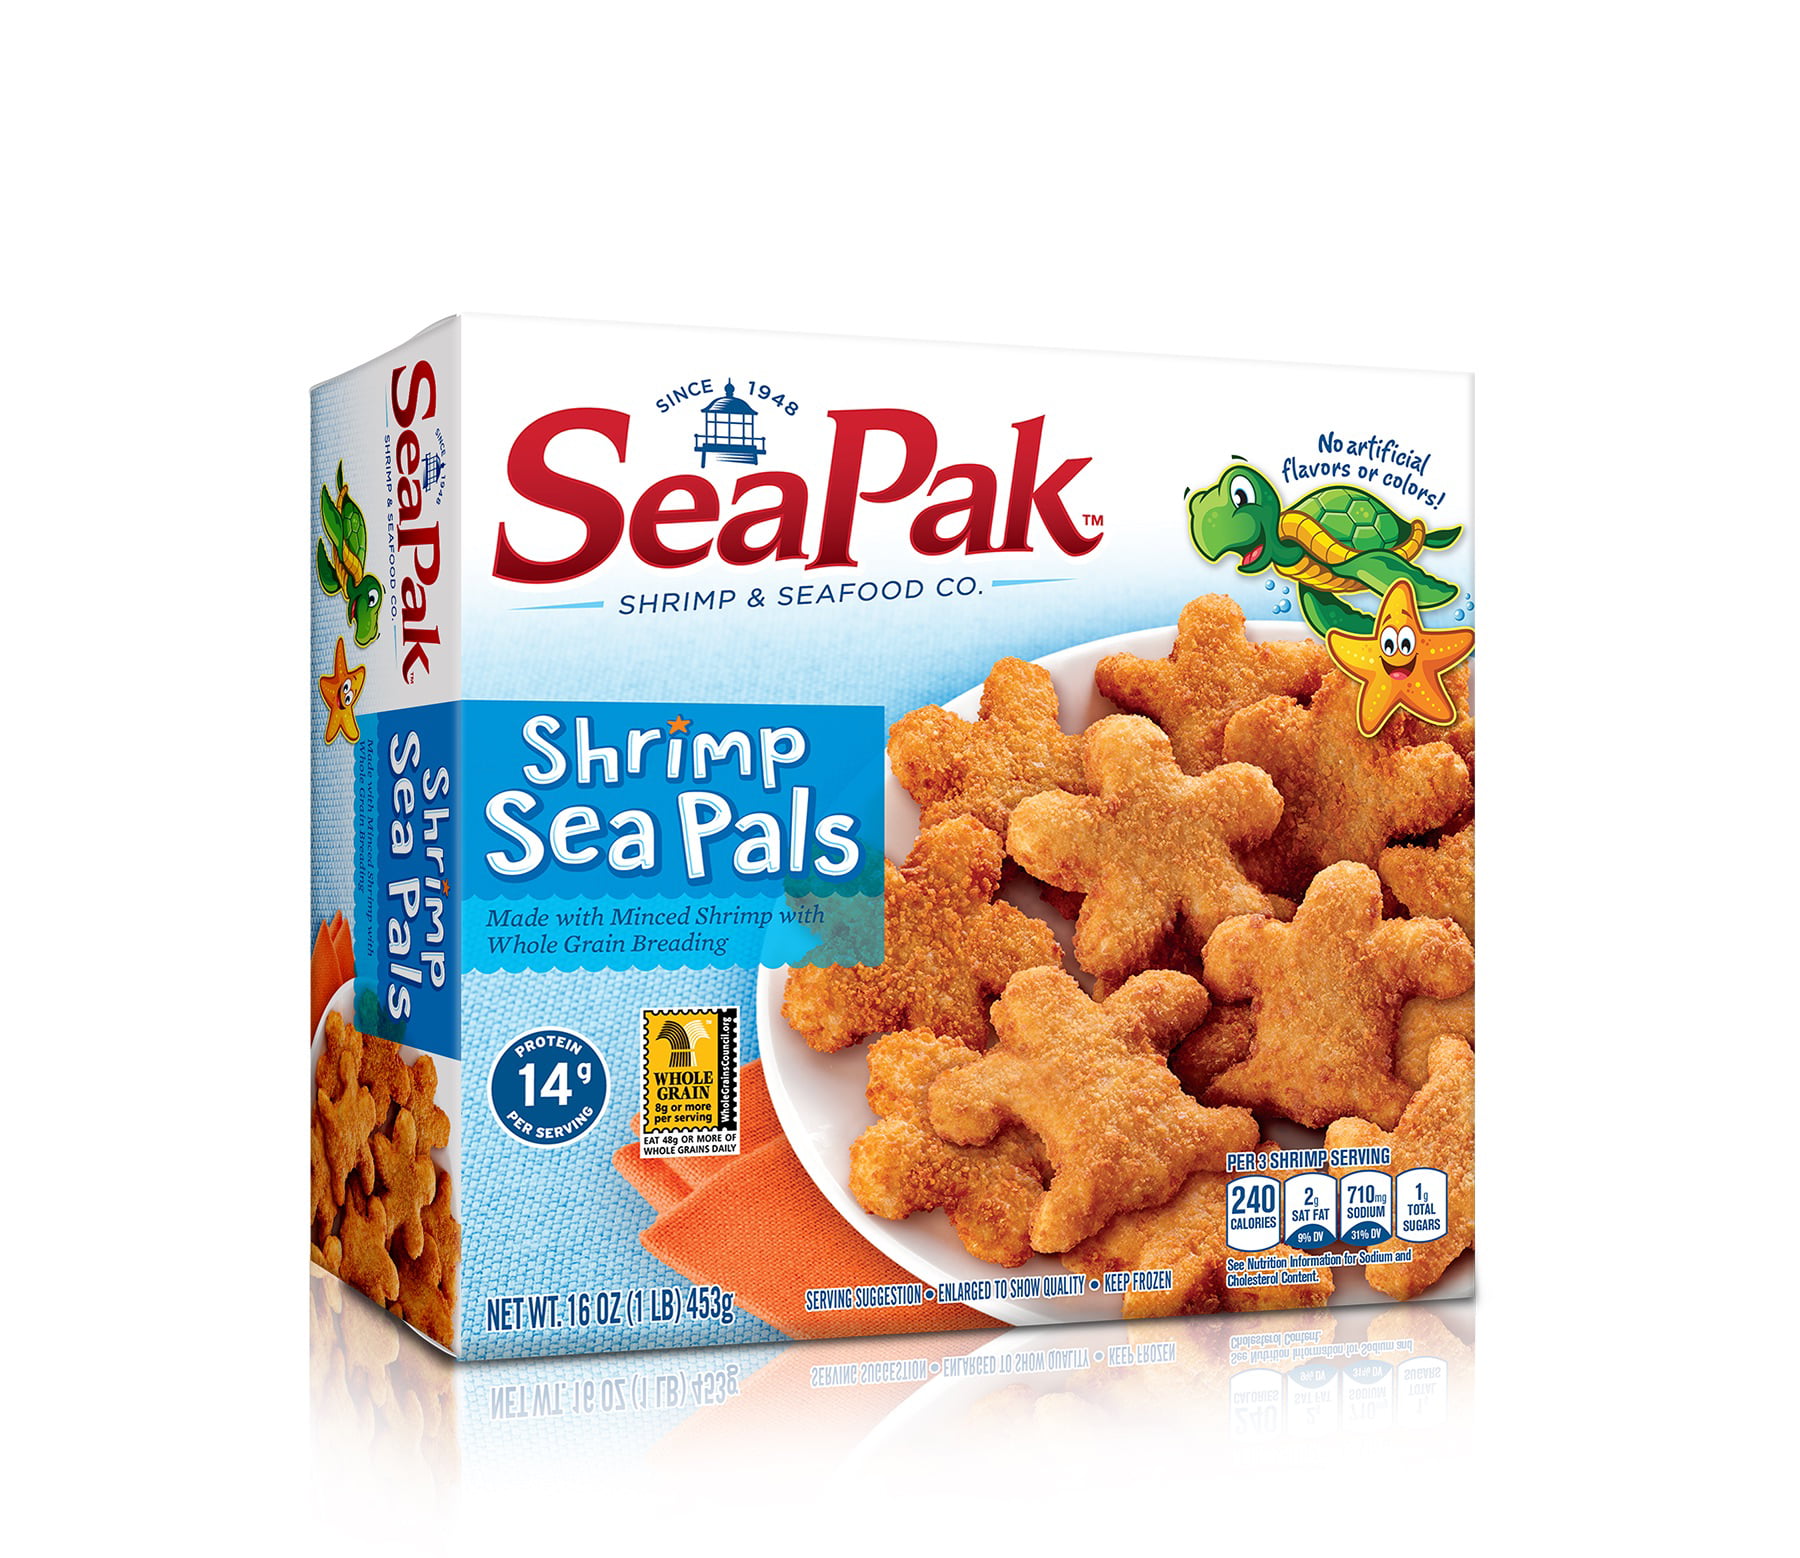 SeaPak™ Shrimp Sea Pals 16 oz. Box - Walmart.com - Walmart.com